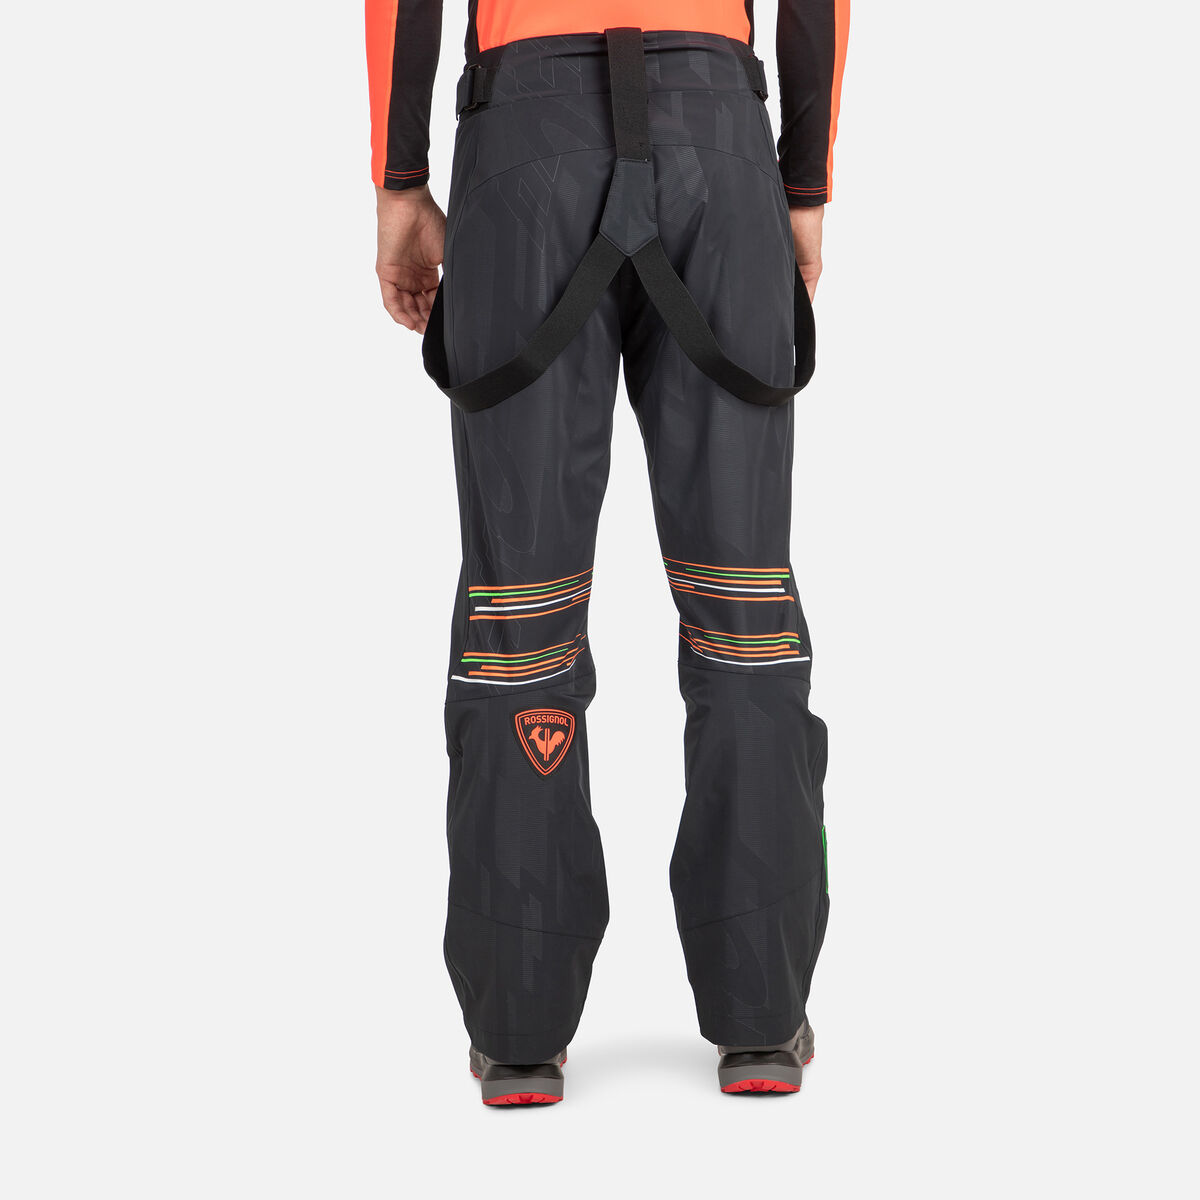 Men's Hero R Pants, Ski trousers